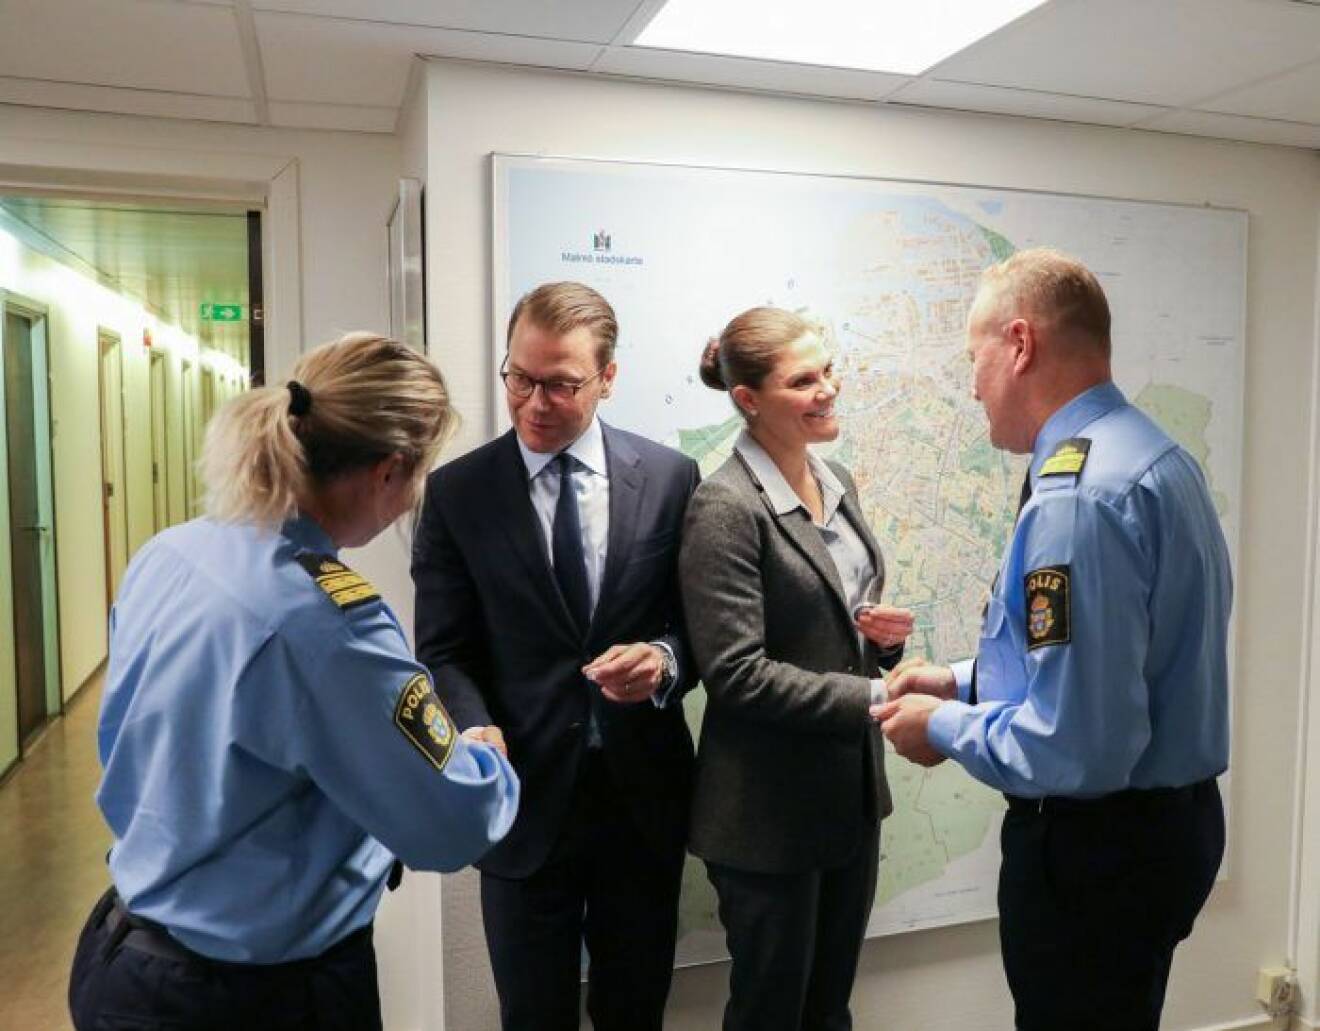 Kronprinsessan Victoria och prins Daniel hos Malmöpolisen - de framför kungafamiljens tack till Sveriges poliser.